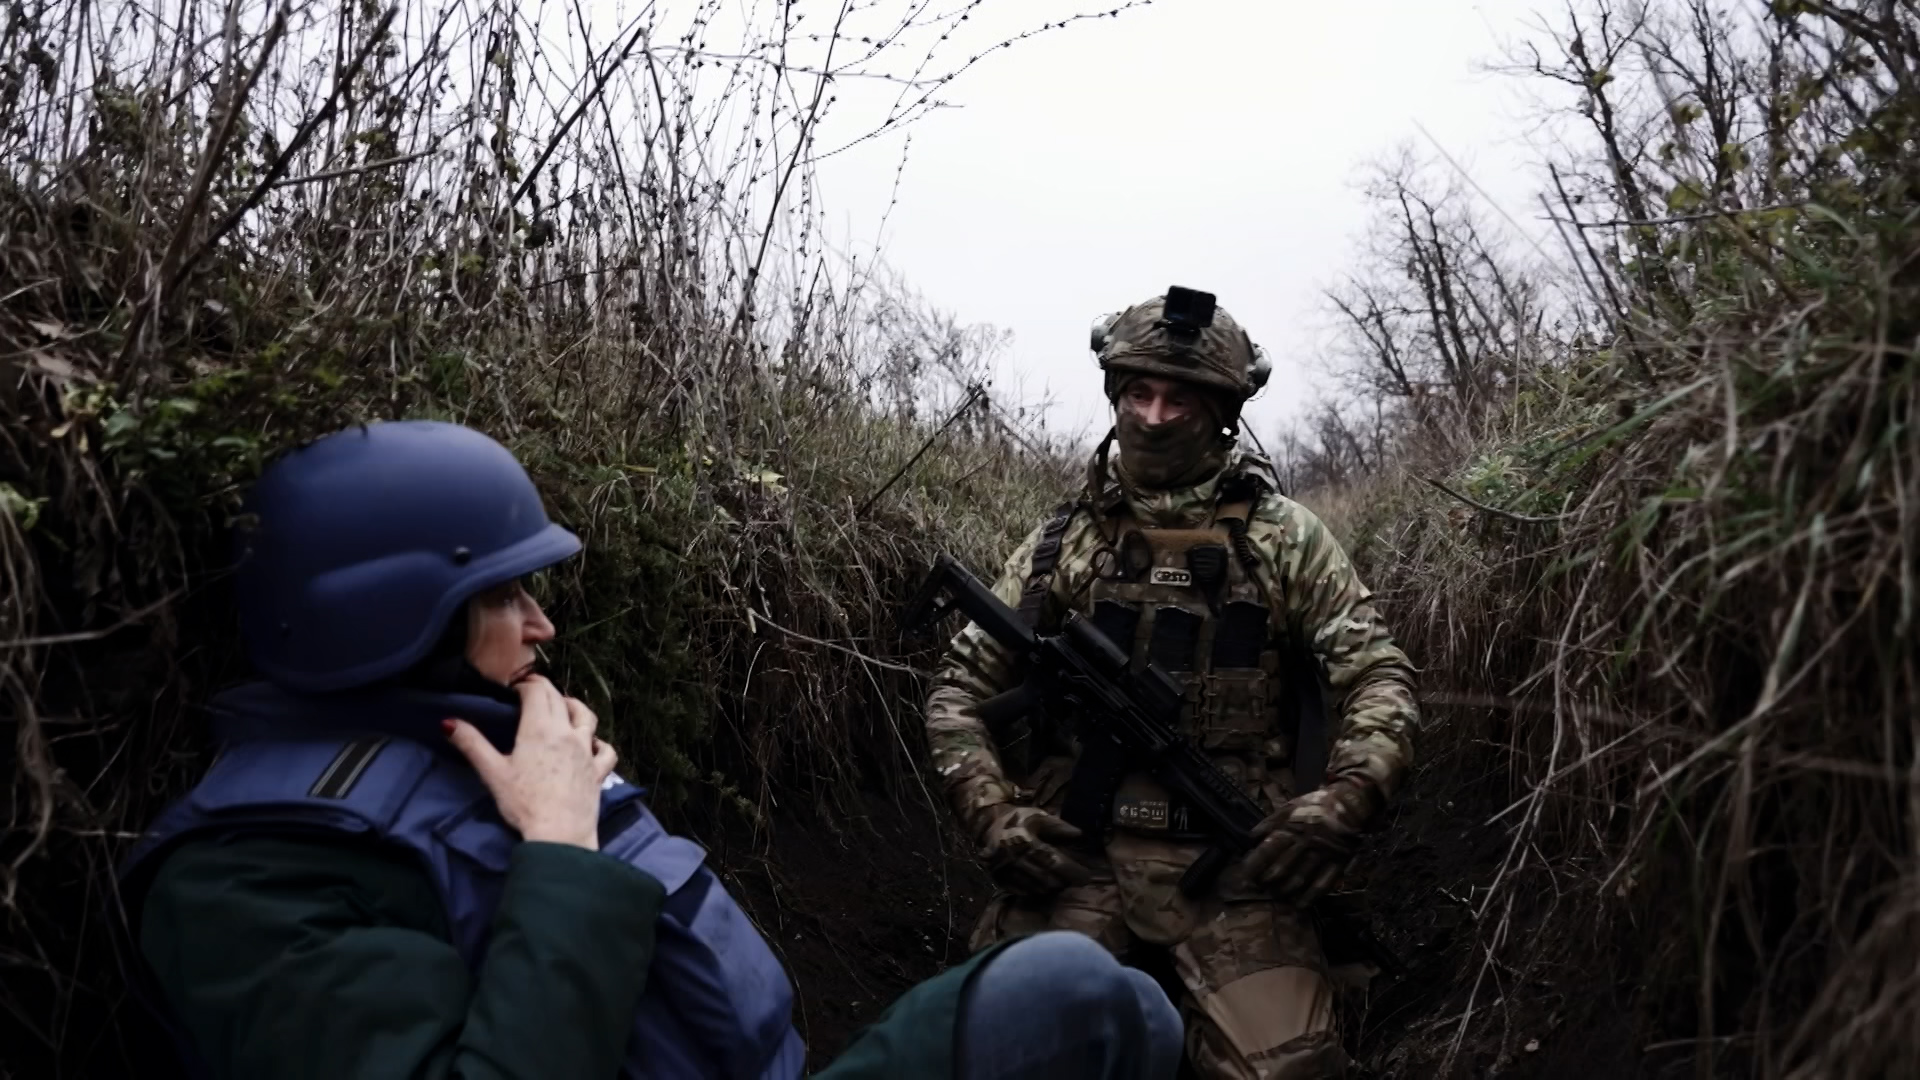 Σβάτοβο: Ρώσος στρατιώτης σώζεται από θαύμα σε μάχη χαρακωμάτων (βίντεο)